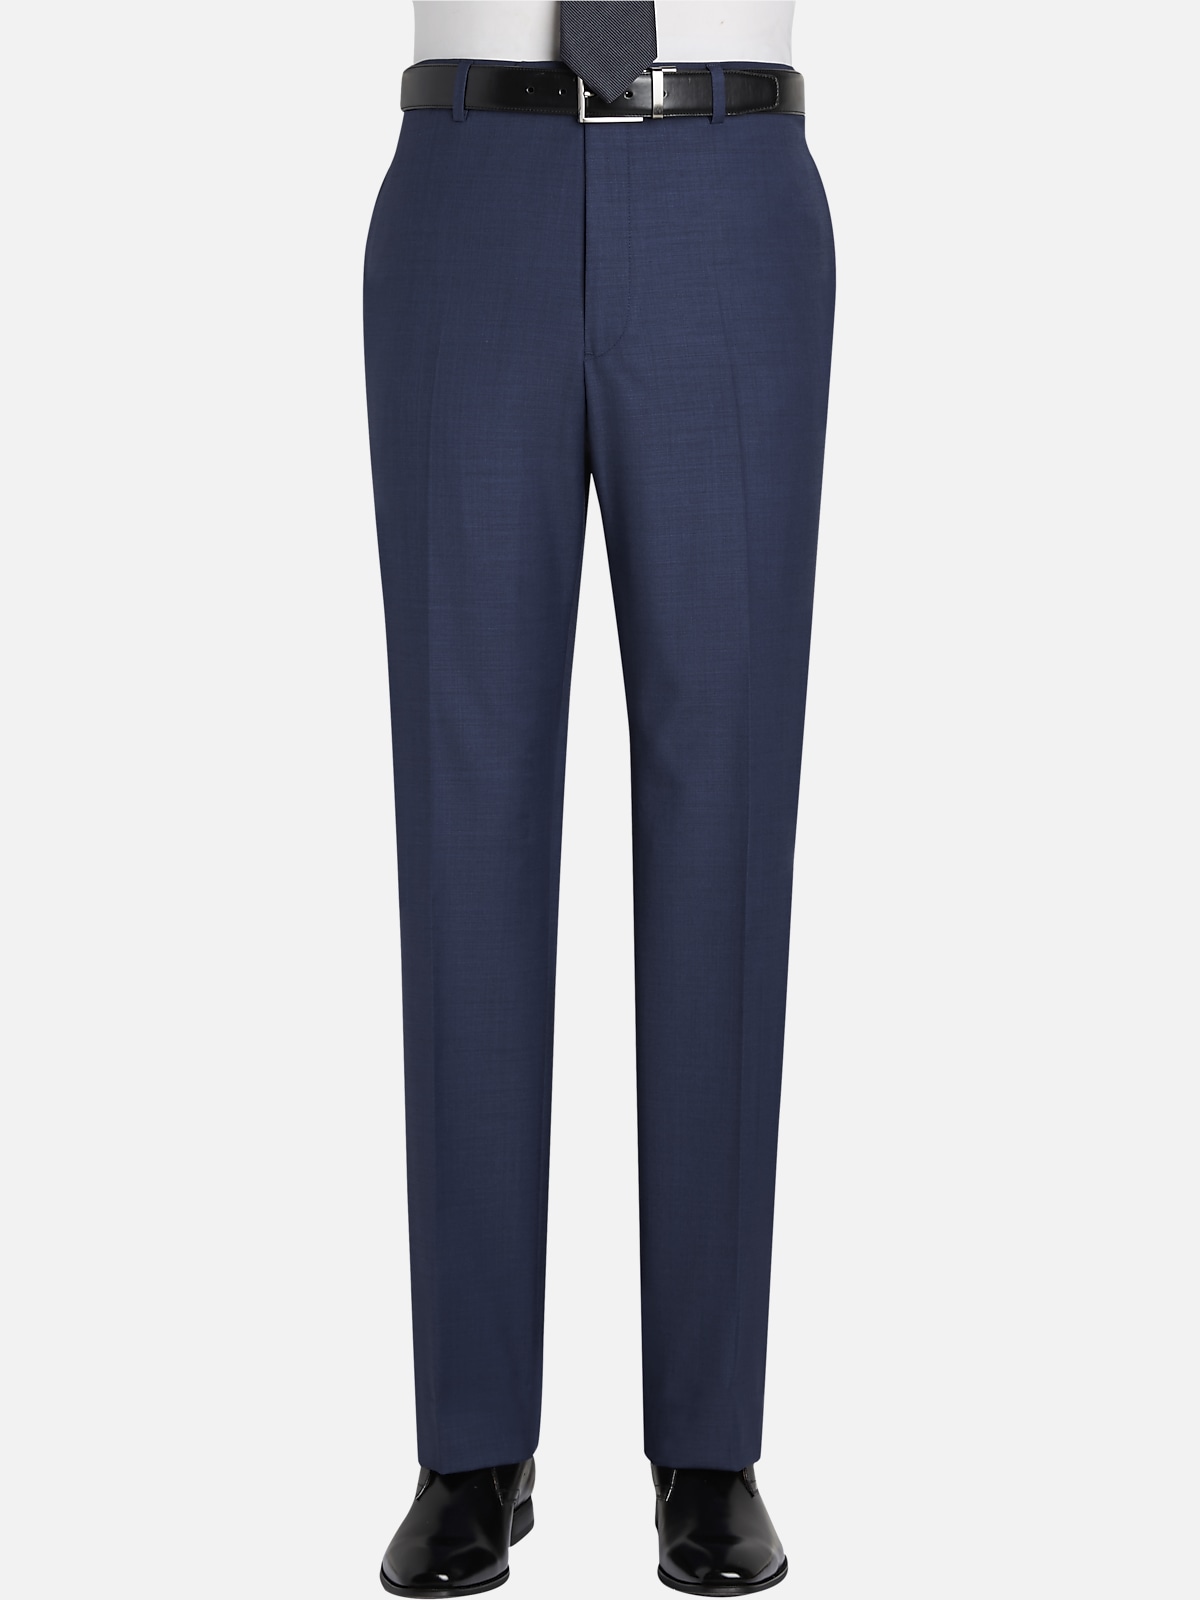 Tommy Hilfiger Men's Modern-Fit Stretch Dress Pants 38 x 30 Navy